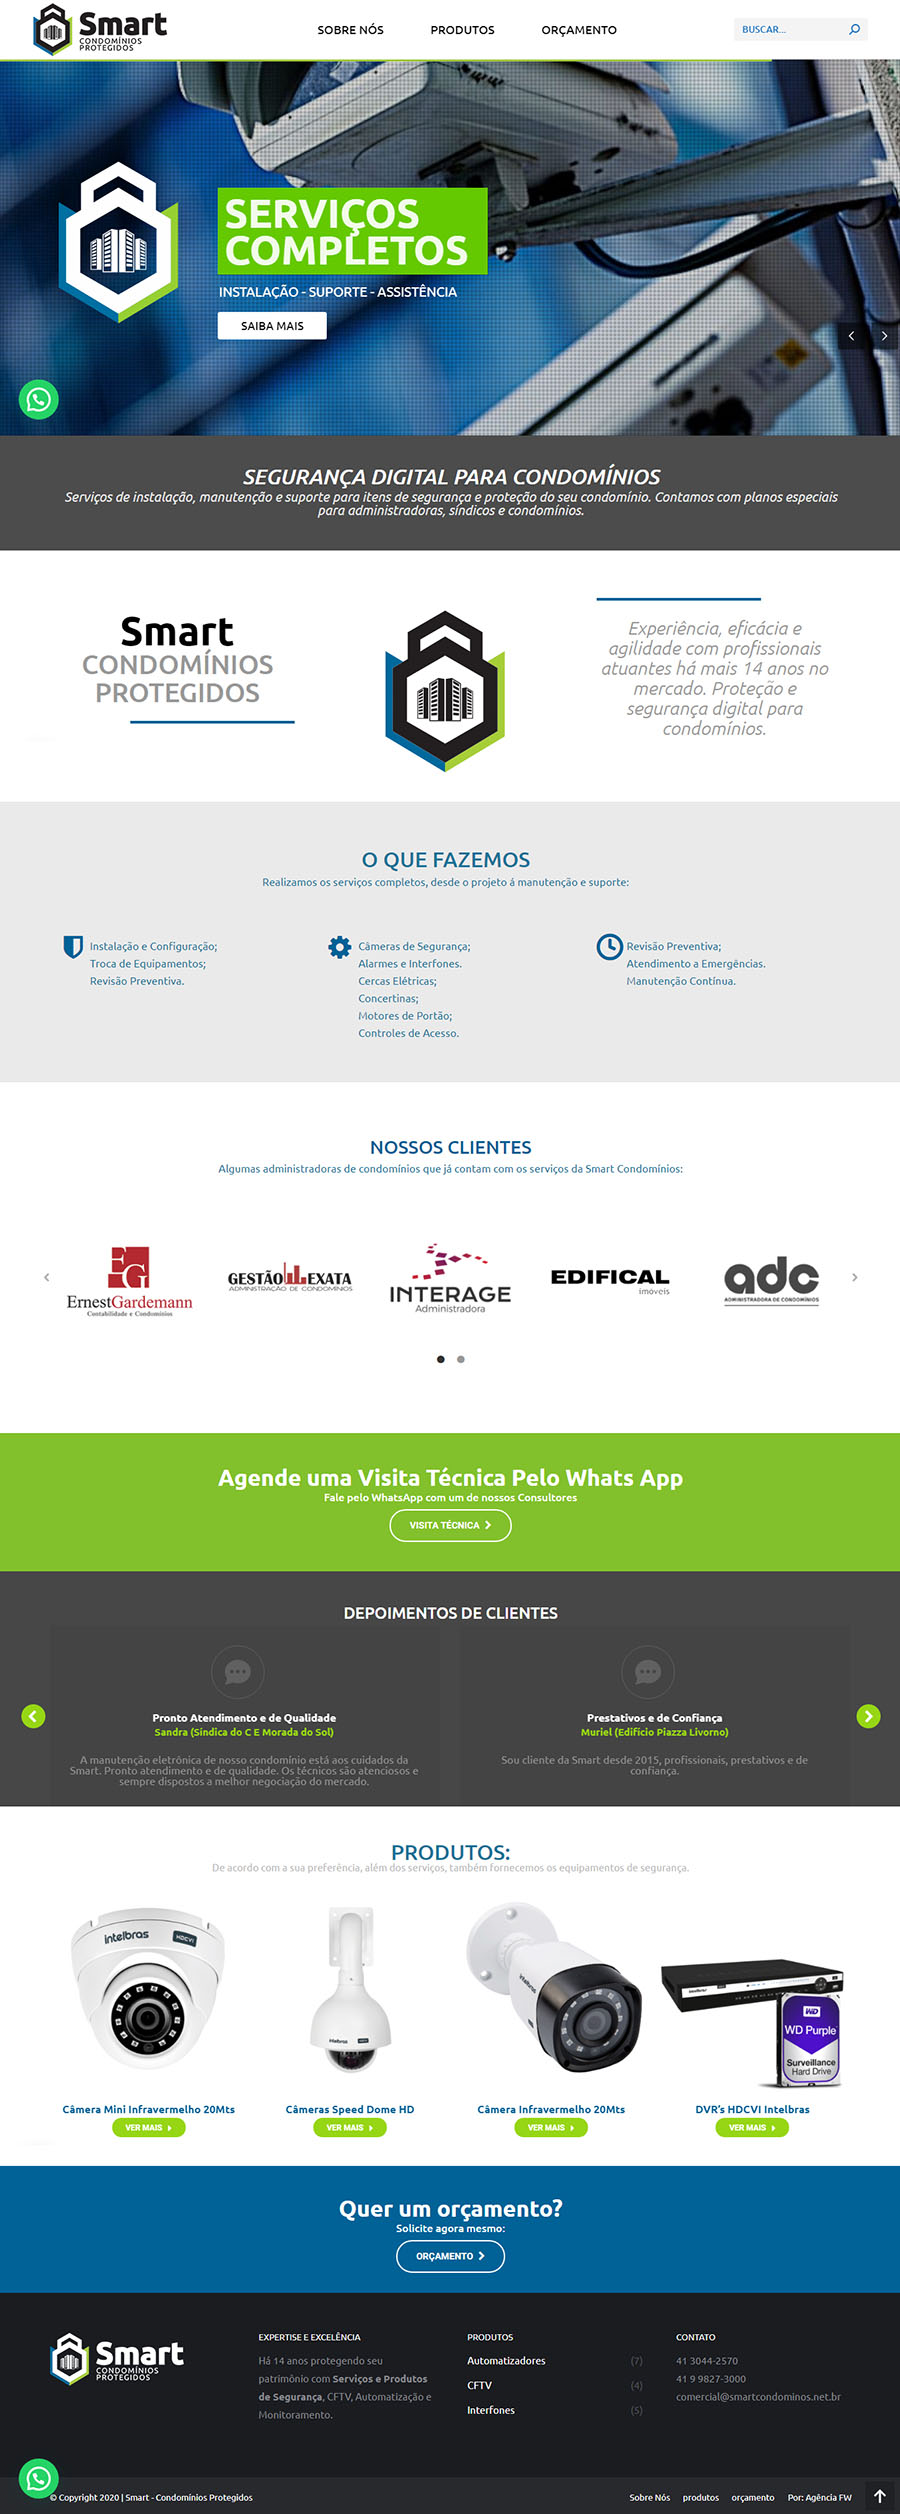 Agência OD - Marketing Digital - Webdesign - Design Gráfico - Qual